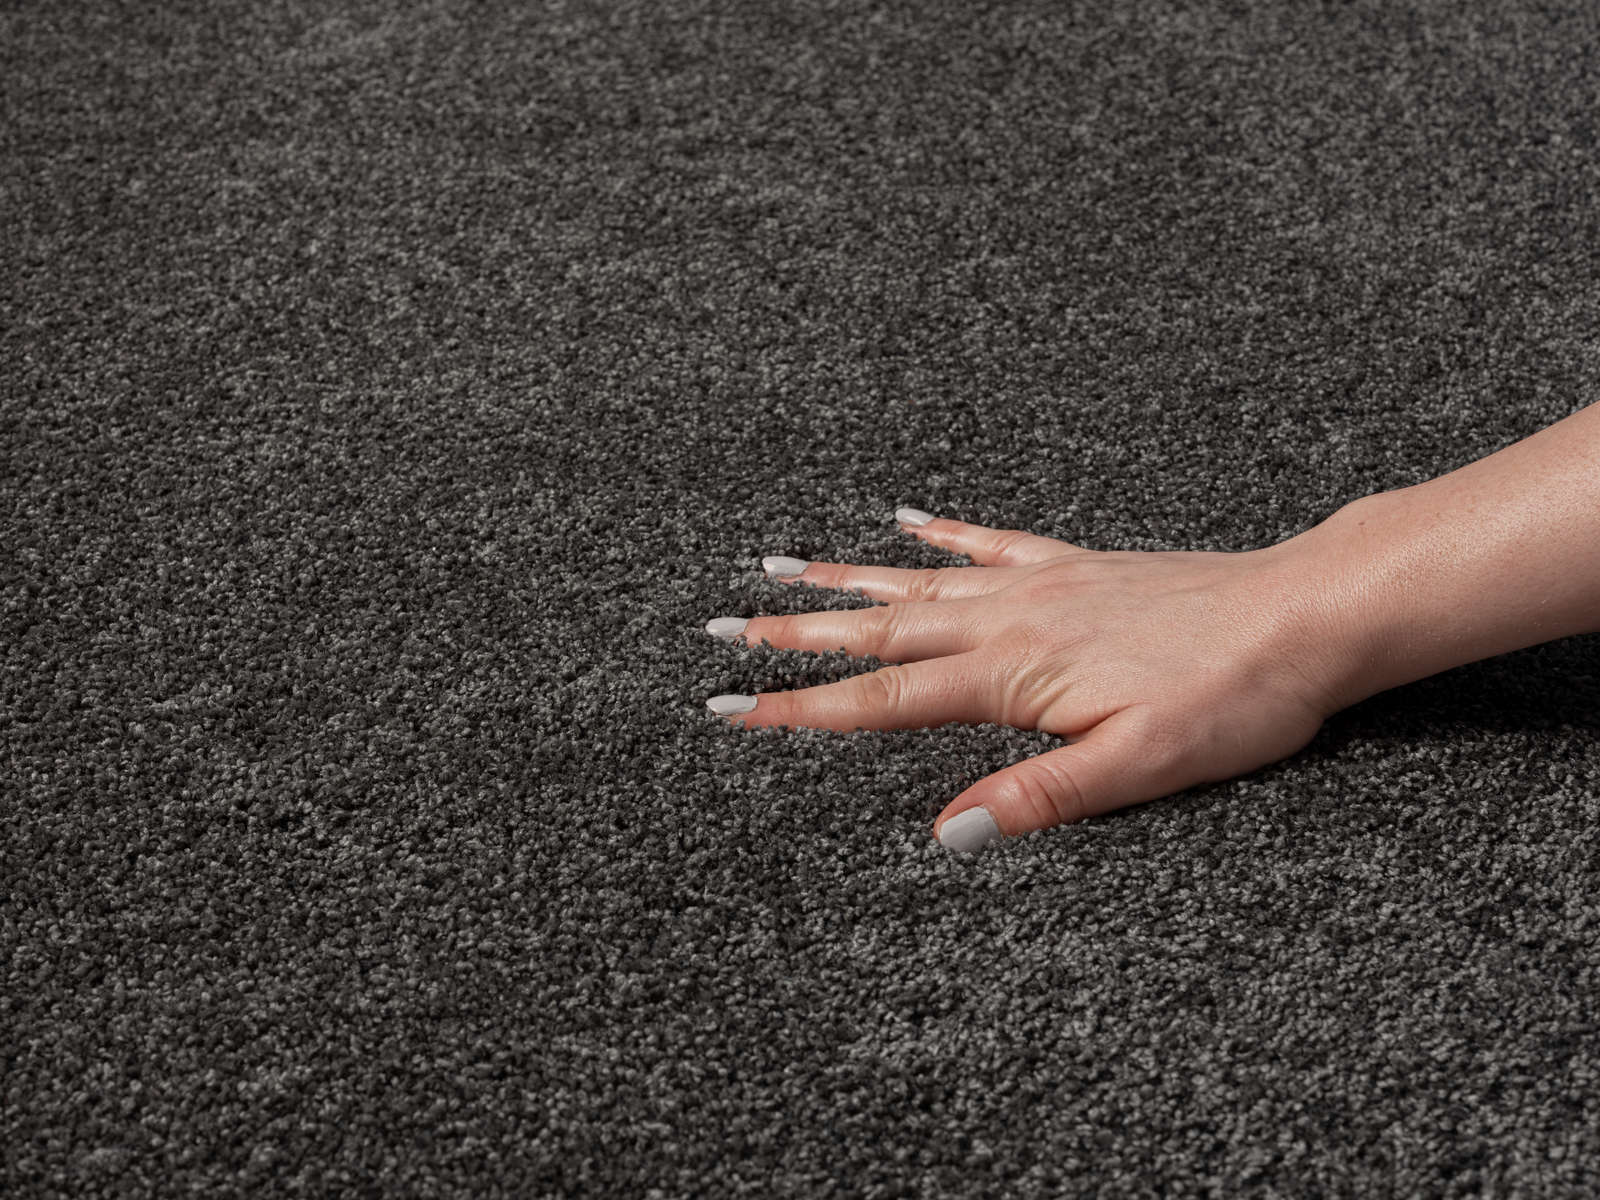             Zacht kortpolig tapijt in antraciet - 110 x 60 cm
        